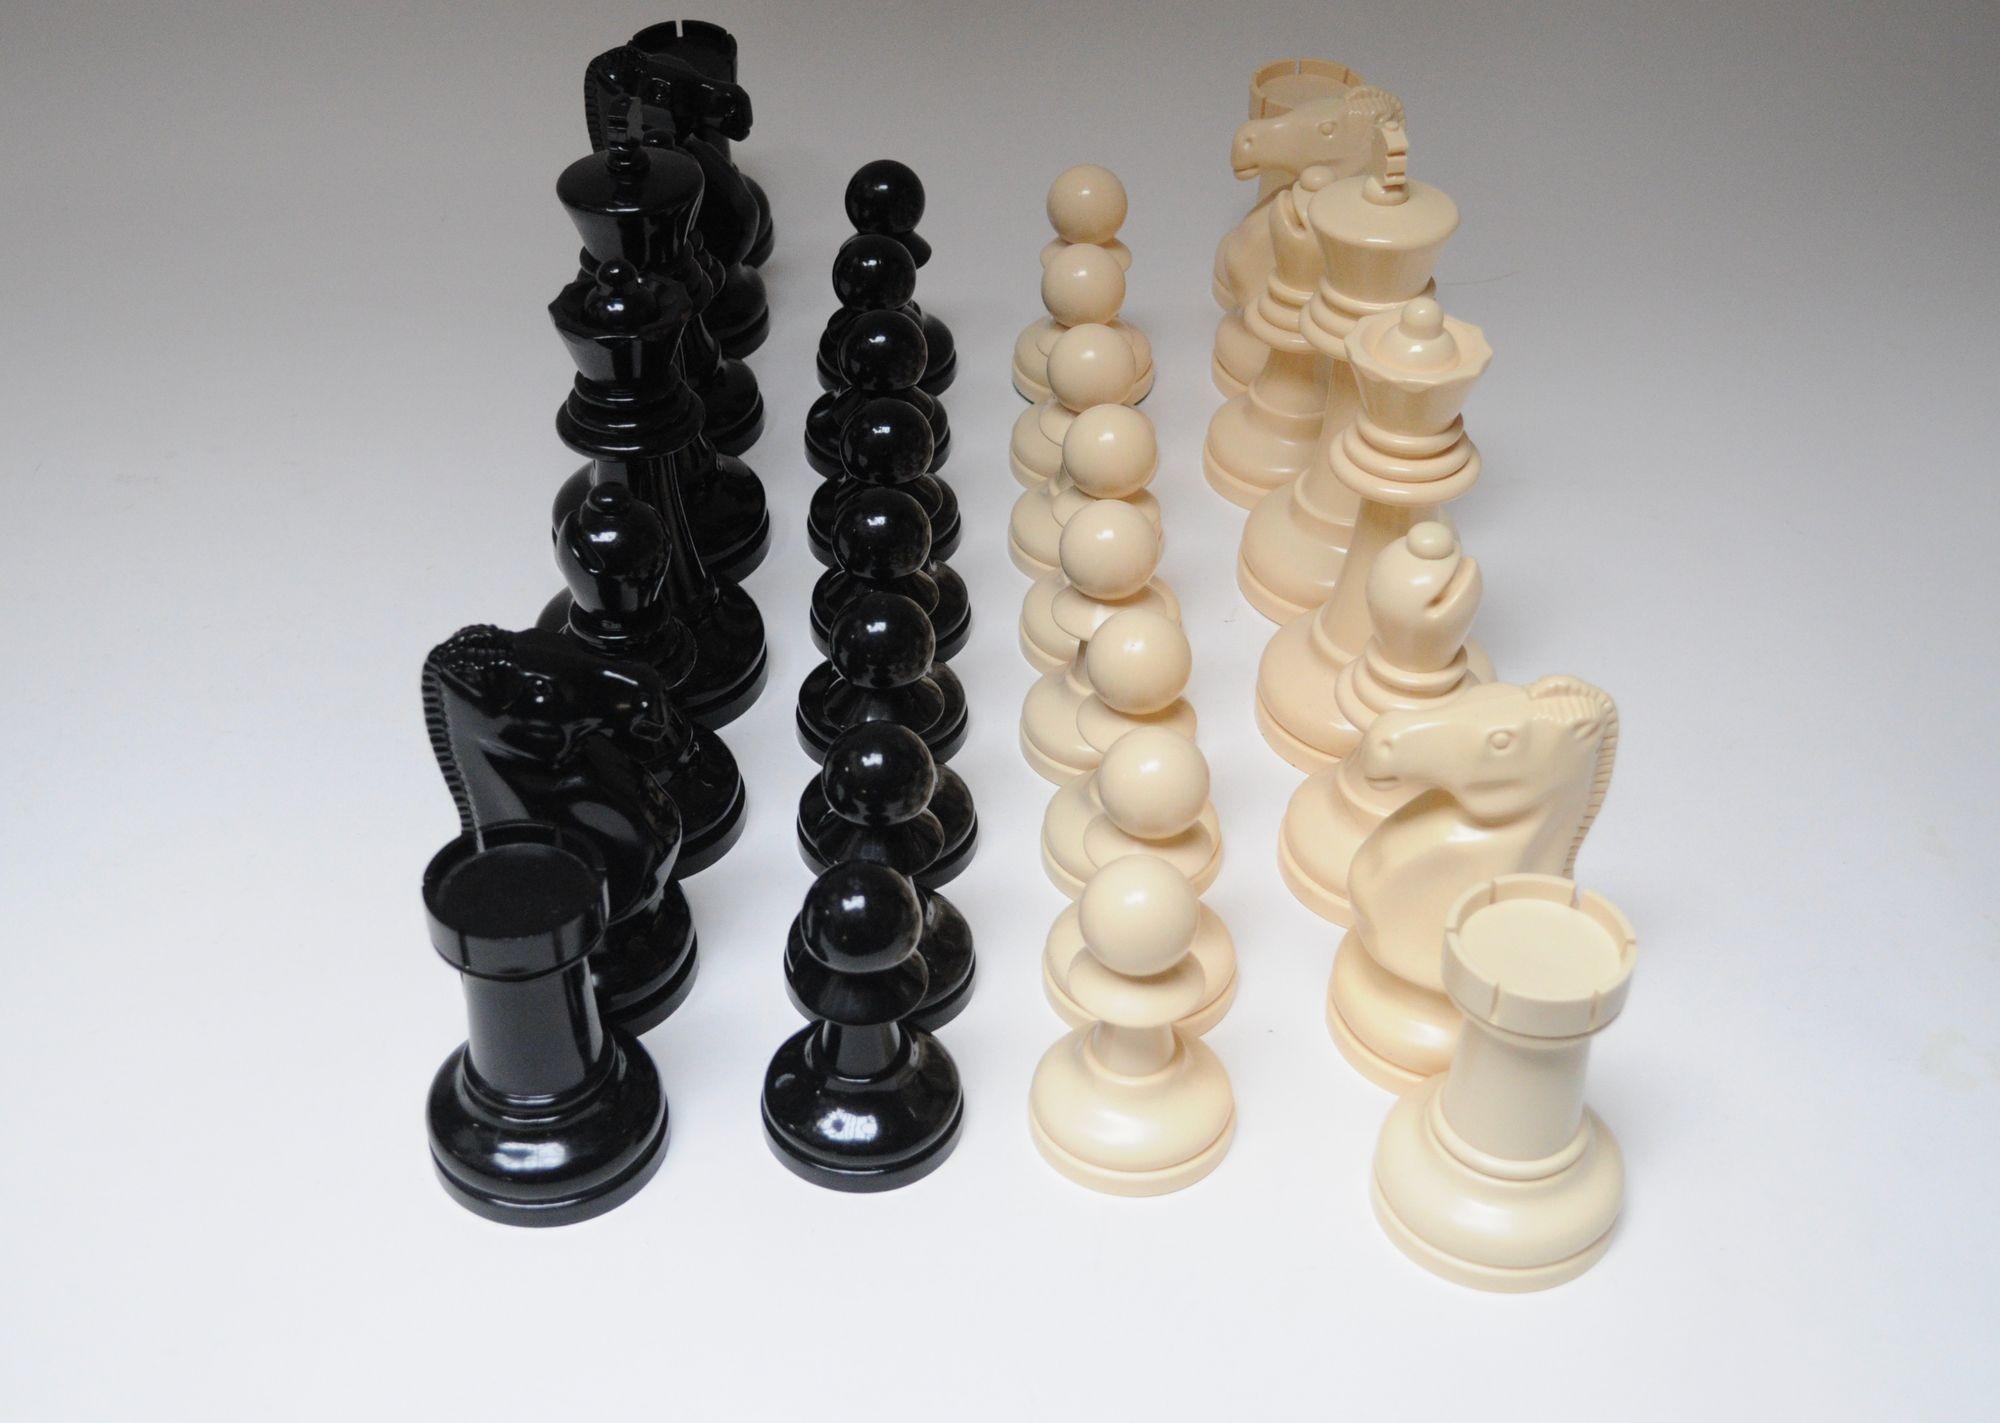 Einzigartig große Schachfiguren aus schwarzem und cremefarbenem Kunststoff, ca. 1970er Jahre USA.
Vollständiges und komplettes Set ohne Brett, obwohl die Quadrate mindestens 4